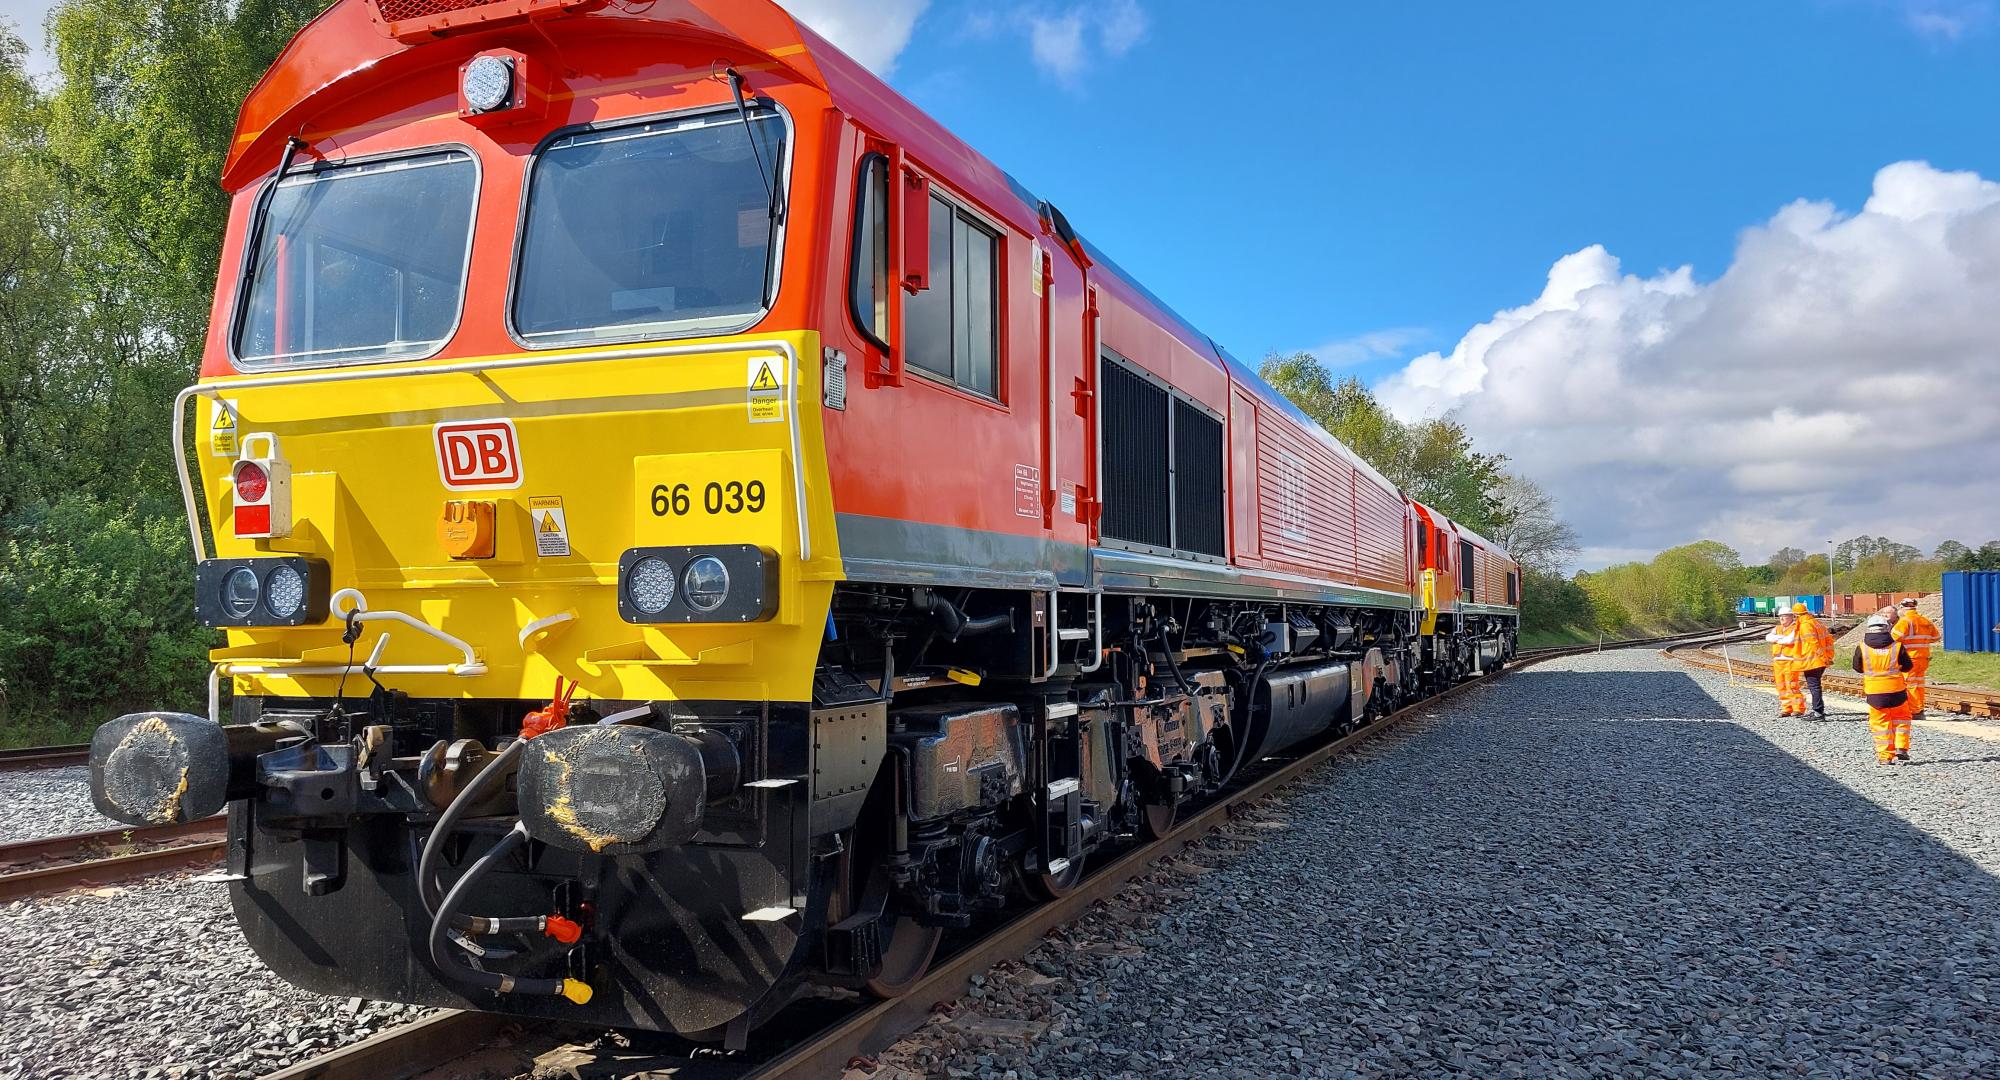 Class 66 ETCS freight train